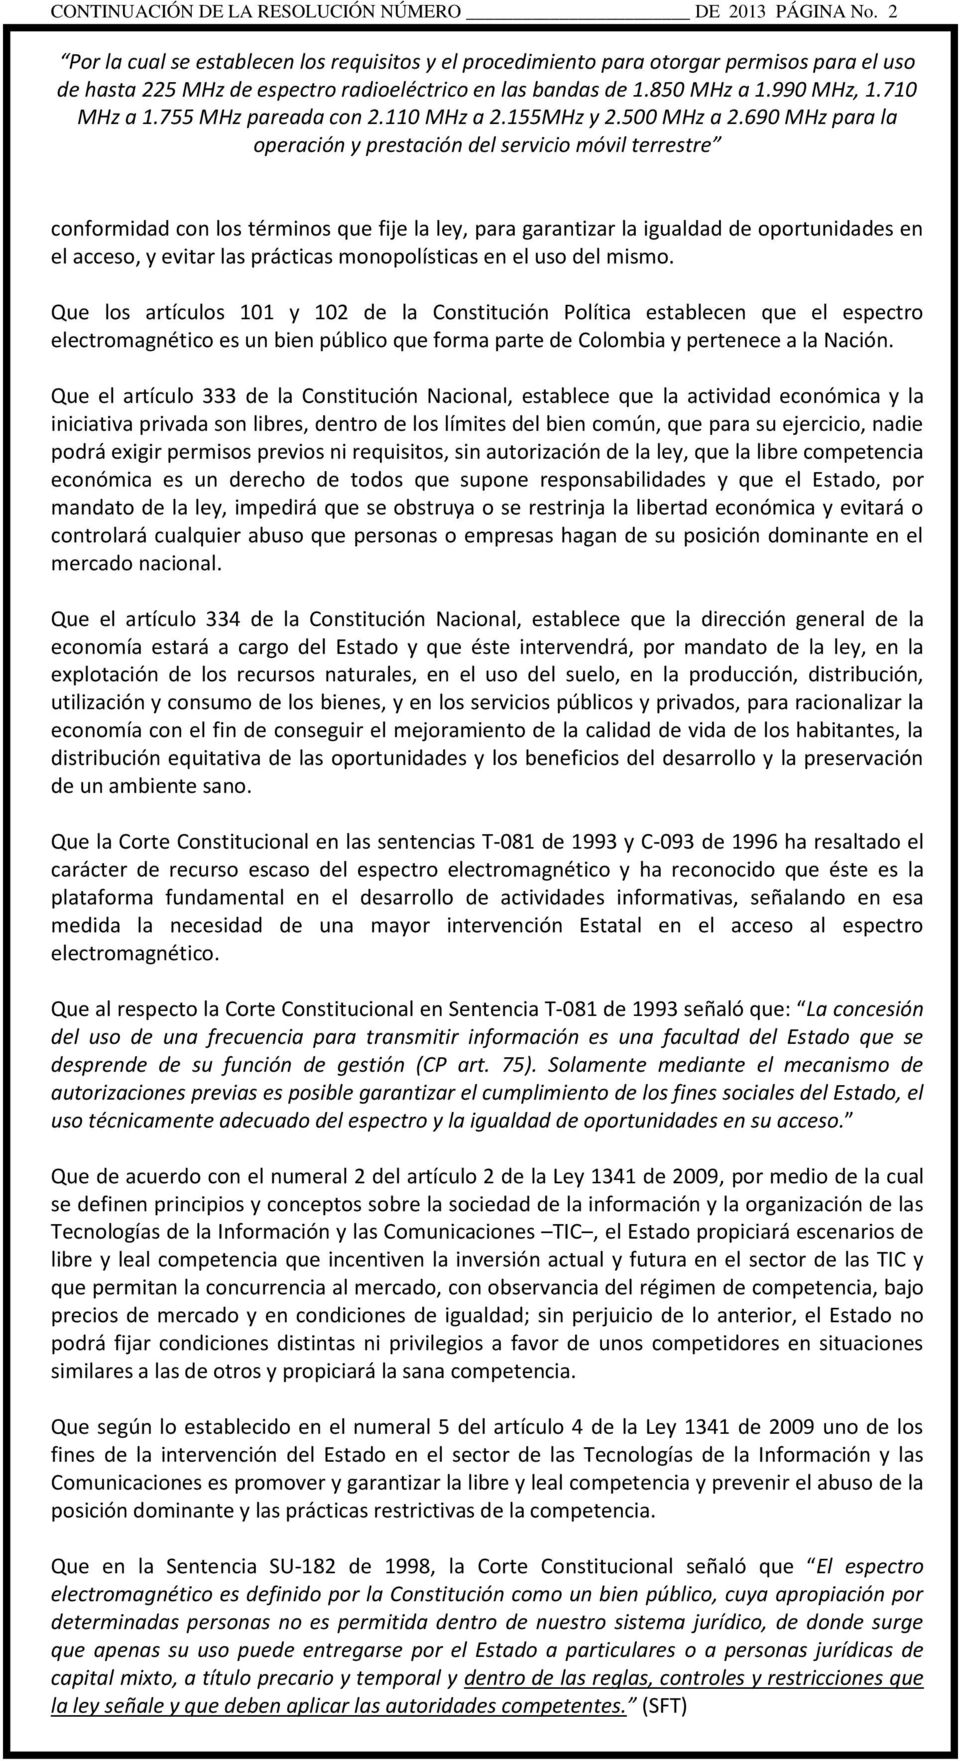 Que los artículos 101 y 102 de la Constitución Política establecen que el espectro electromagnético es un bien público que forma parte de Colombia y pertenece a la Nación.